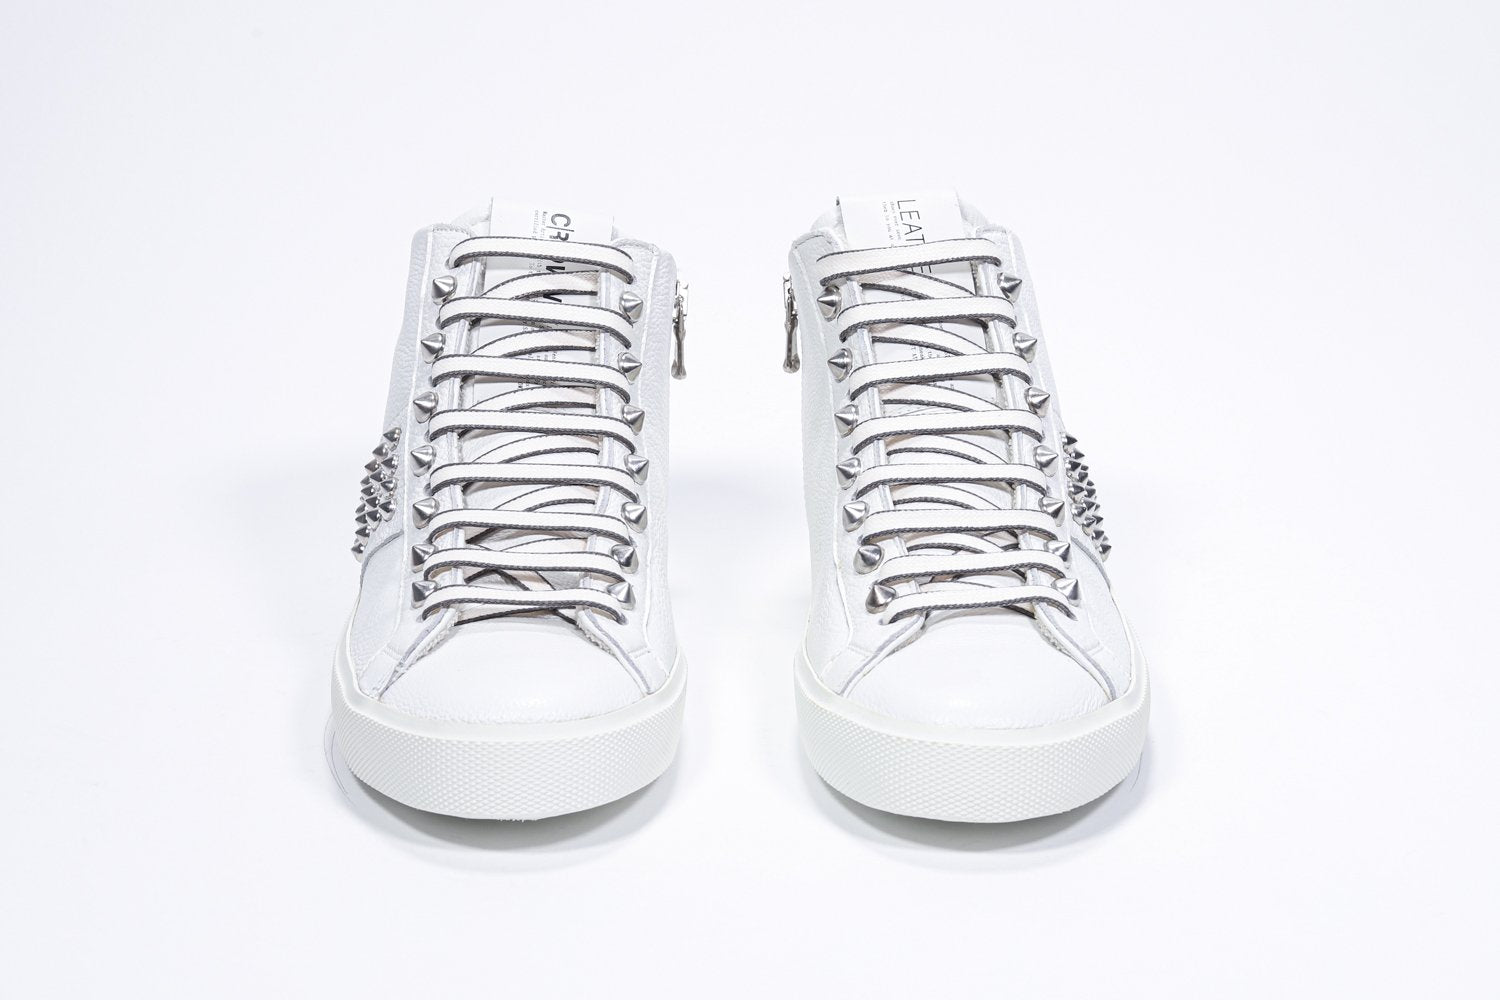 Vista frontale del mid top bianco sneaker. Tomaia in pelle con borchie, zip interna e suola in gomma bianca.